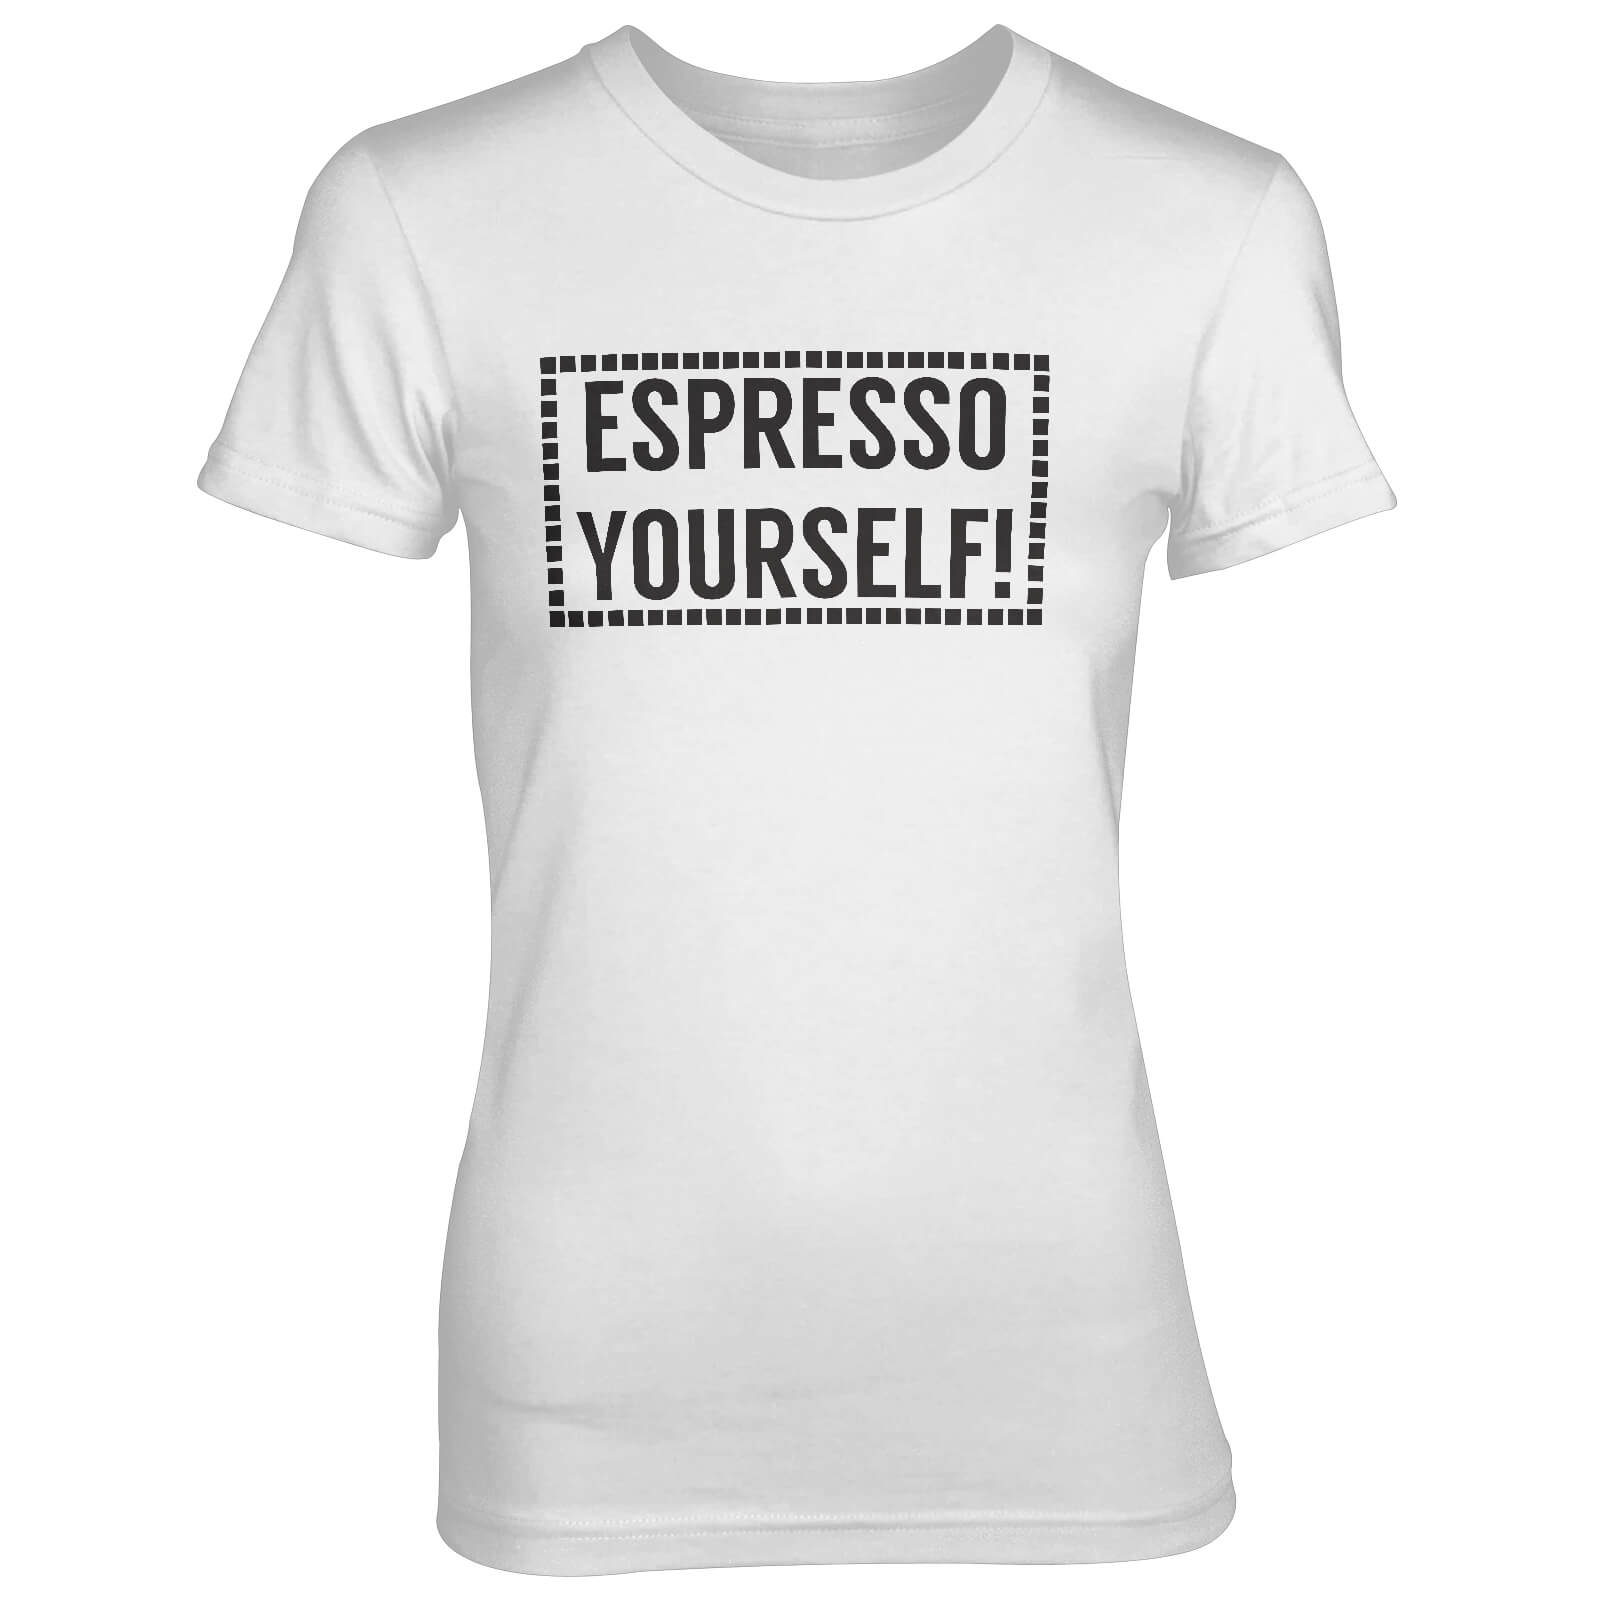 Espresso Yourself! Women's White T-Shirt - S - White